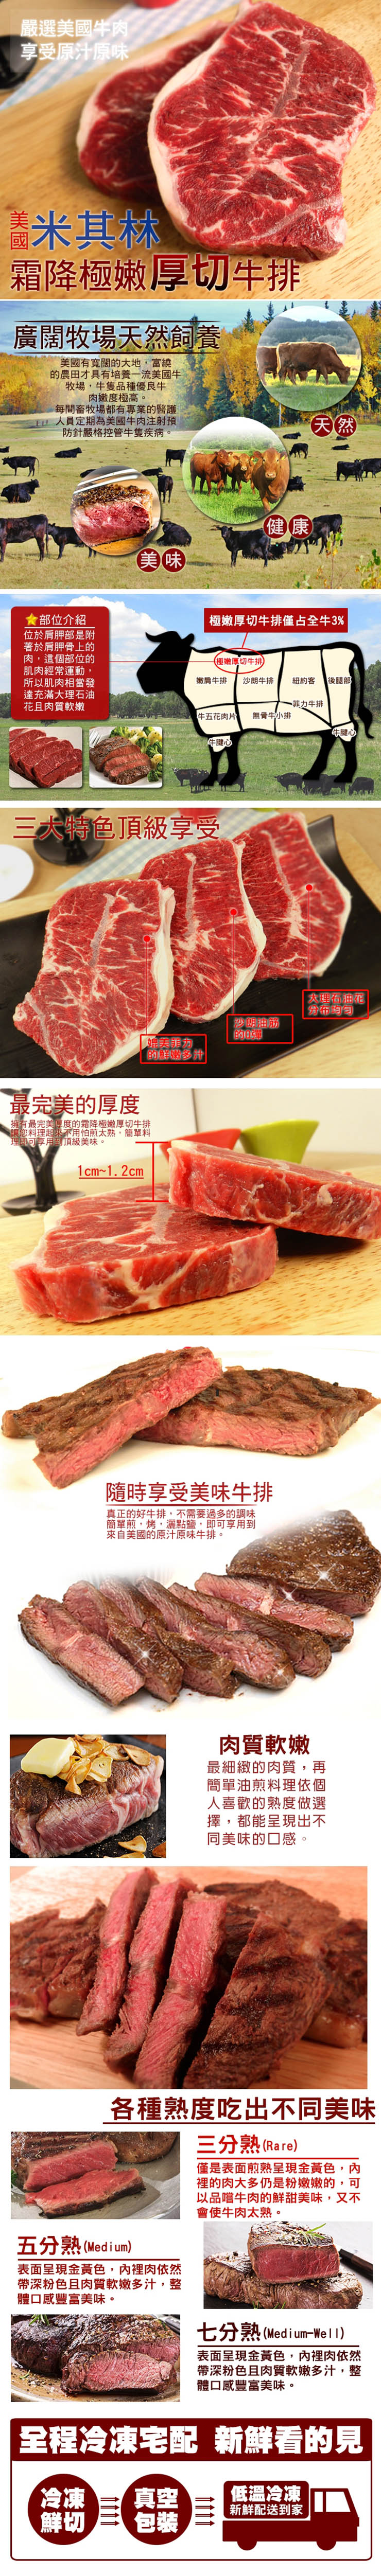       【20片組】美國頂級霜降極嫩厚切牛排(150g/片)